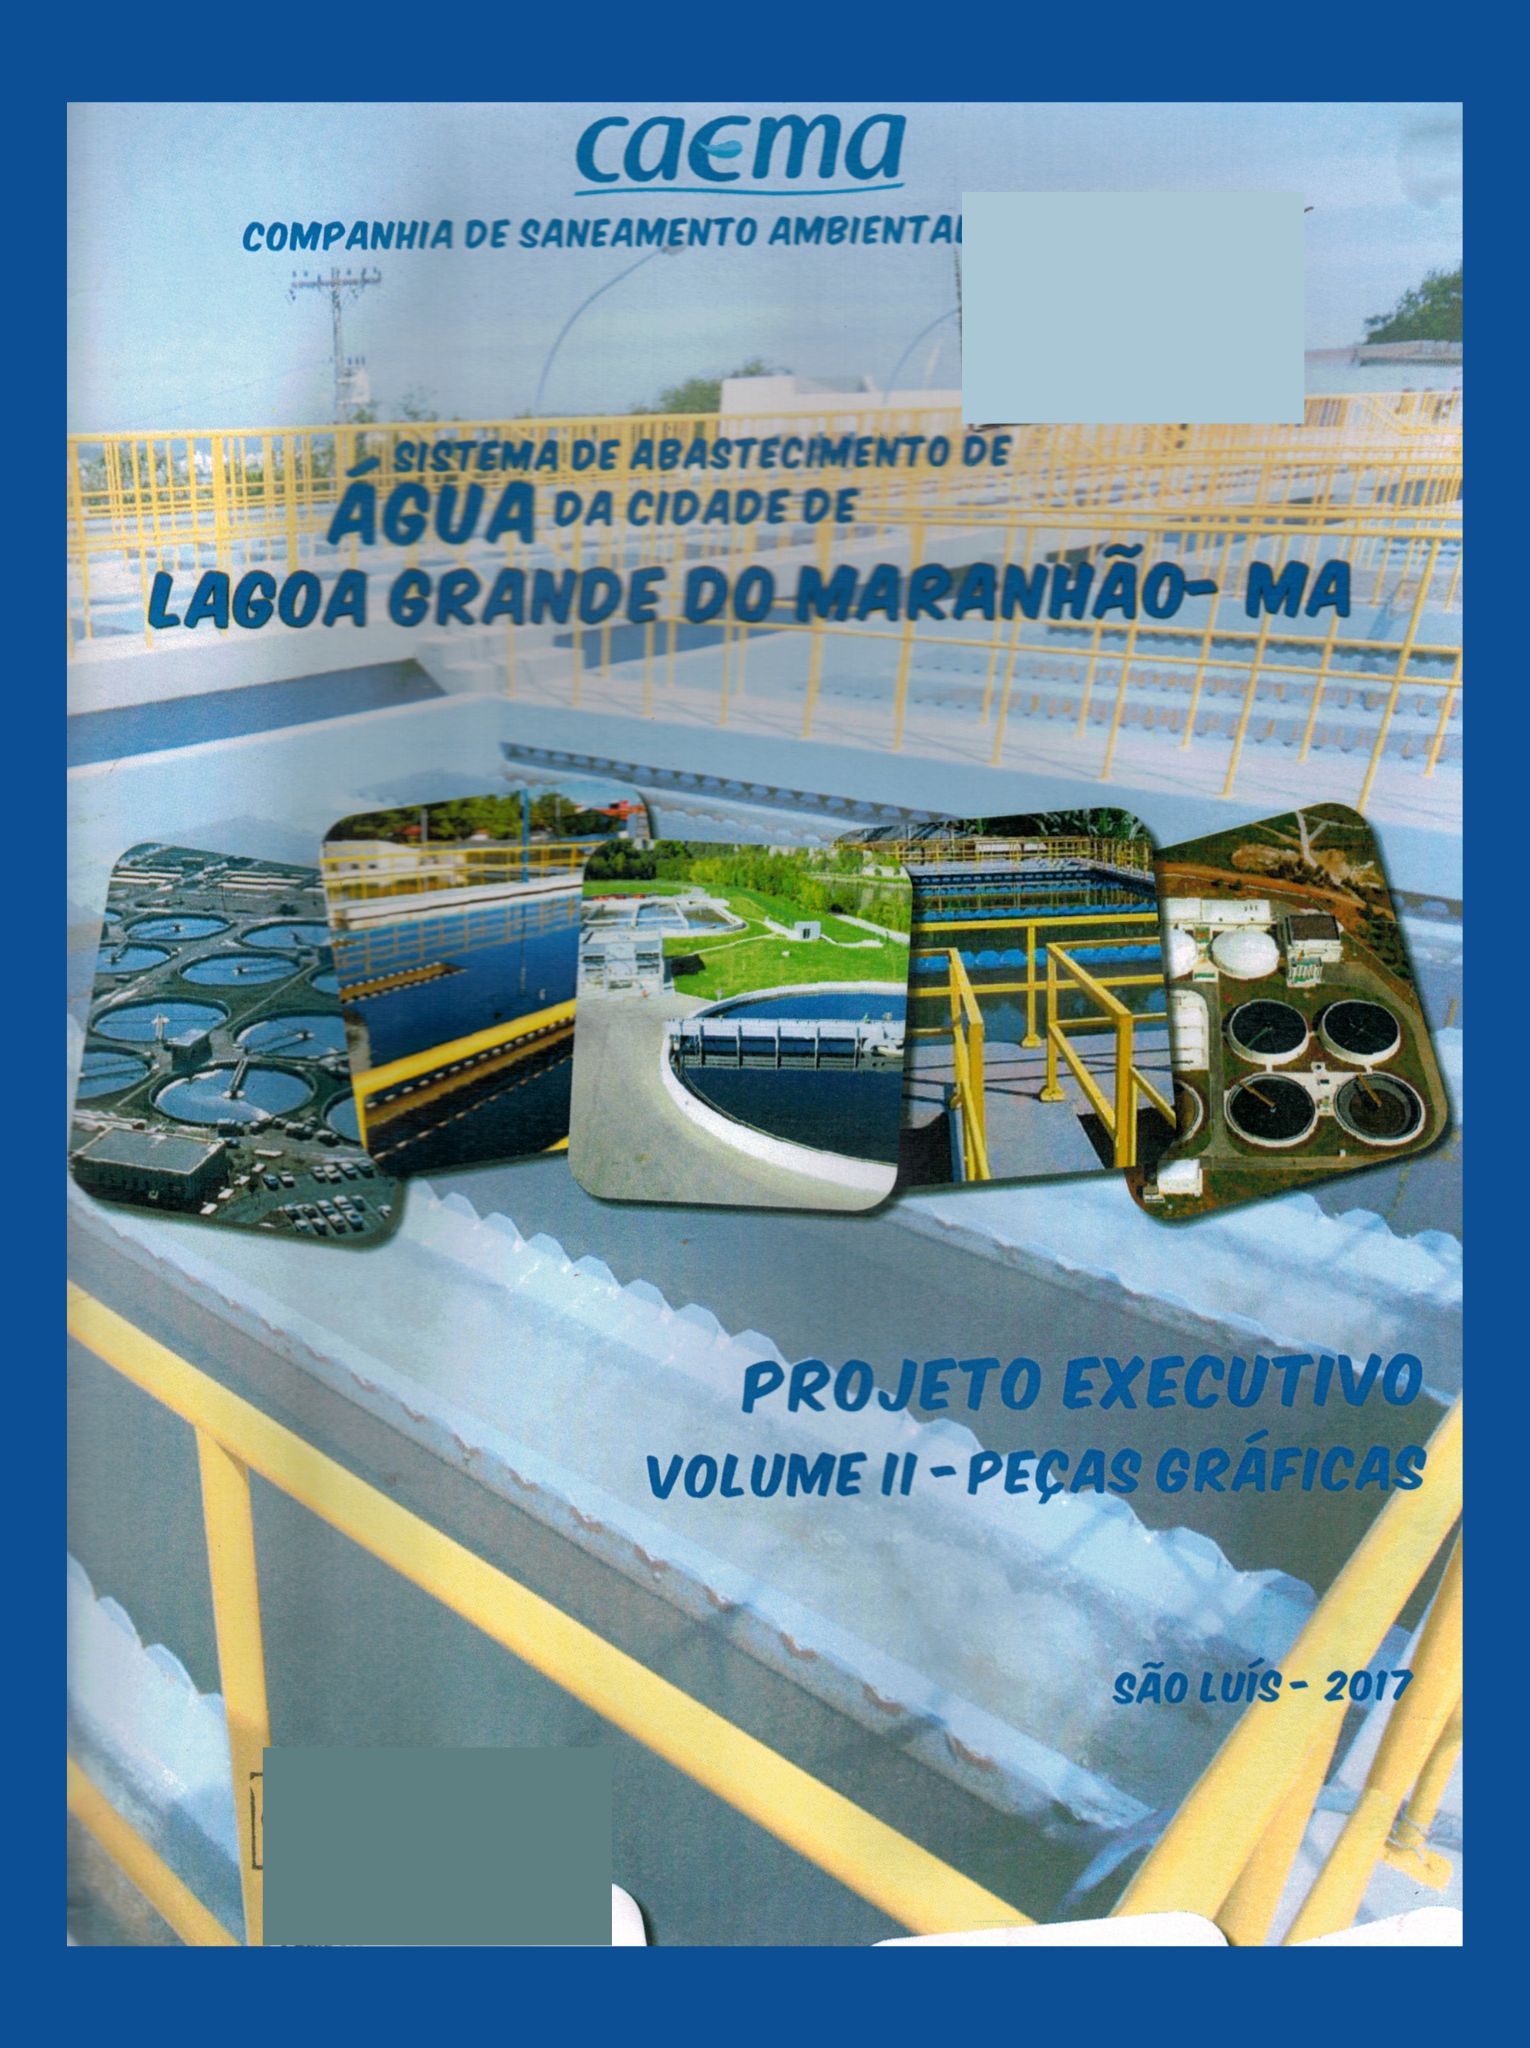 Imagem da capa do Projeto técnico contendo título e autoria.